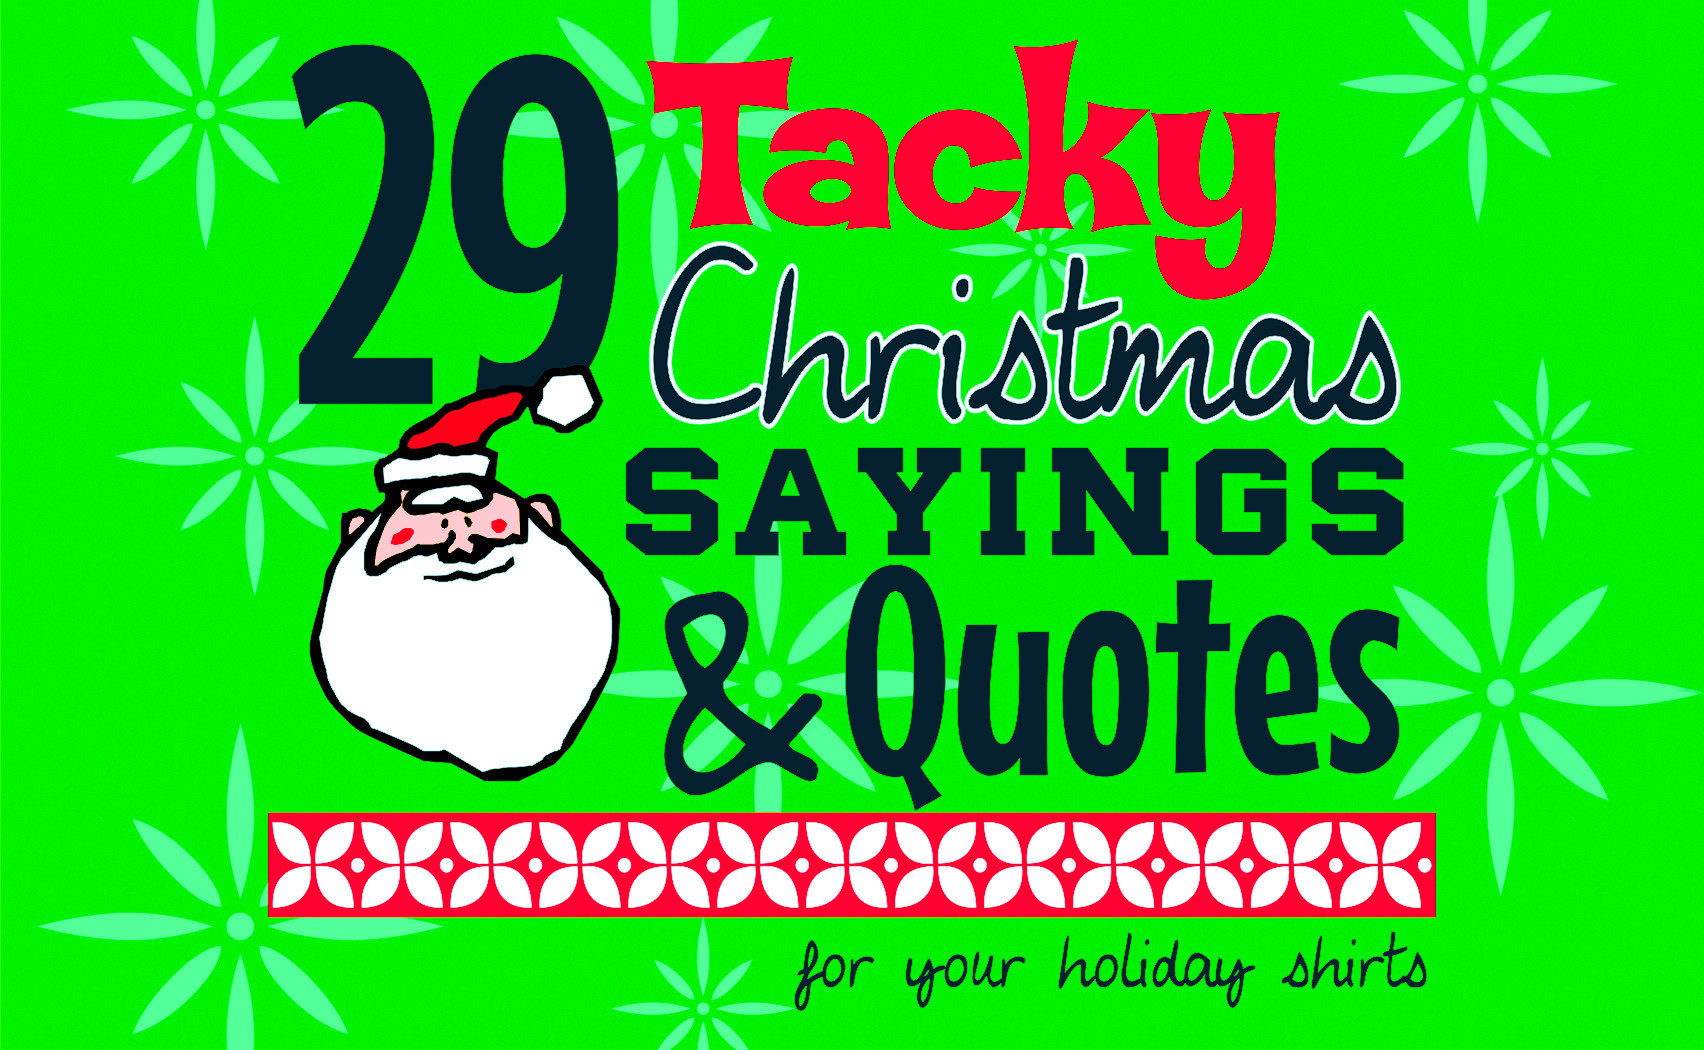 Christmas Sayings And Quotes
 IZA Design Blog Tacky Christmas Sayings and Quotes